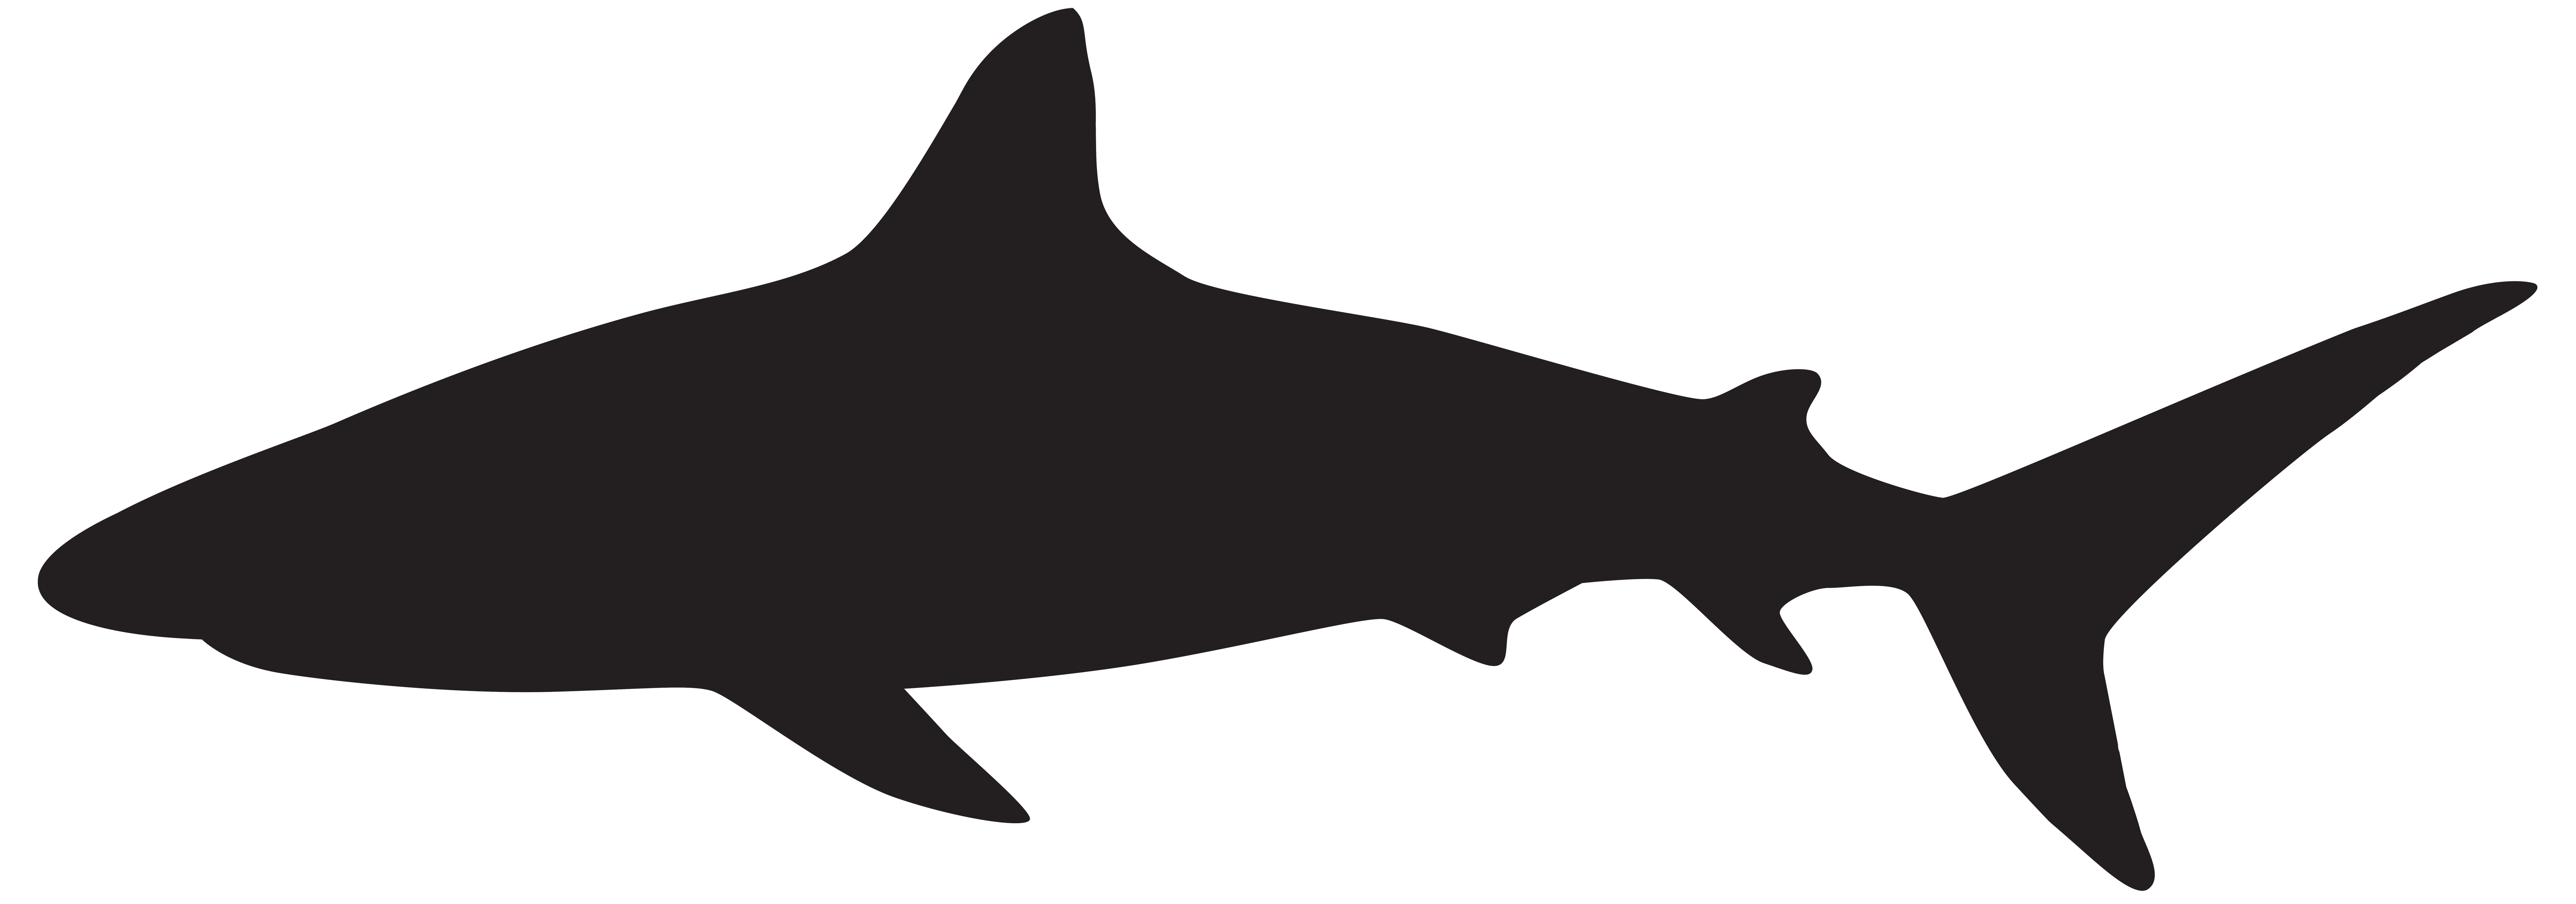 great white shark shark silhouette.